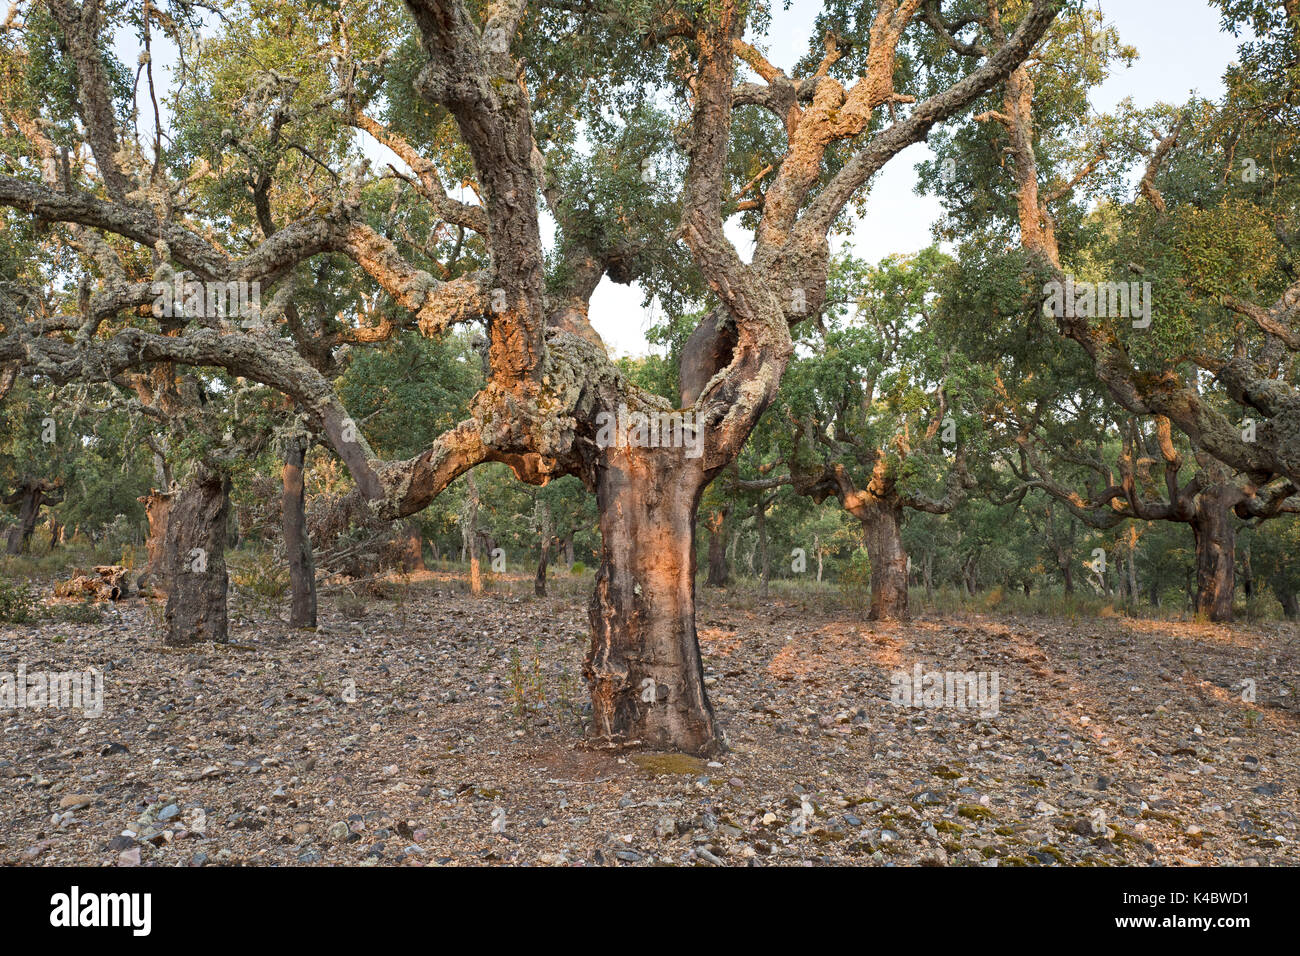 Forêt de chêne liège commercial dans le Parc Naturel Arribes del Duero (Parque Natural de Arribes del Duero) près de Pinilla de Lerma Espagne Juin Banque D'Images